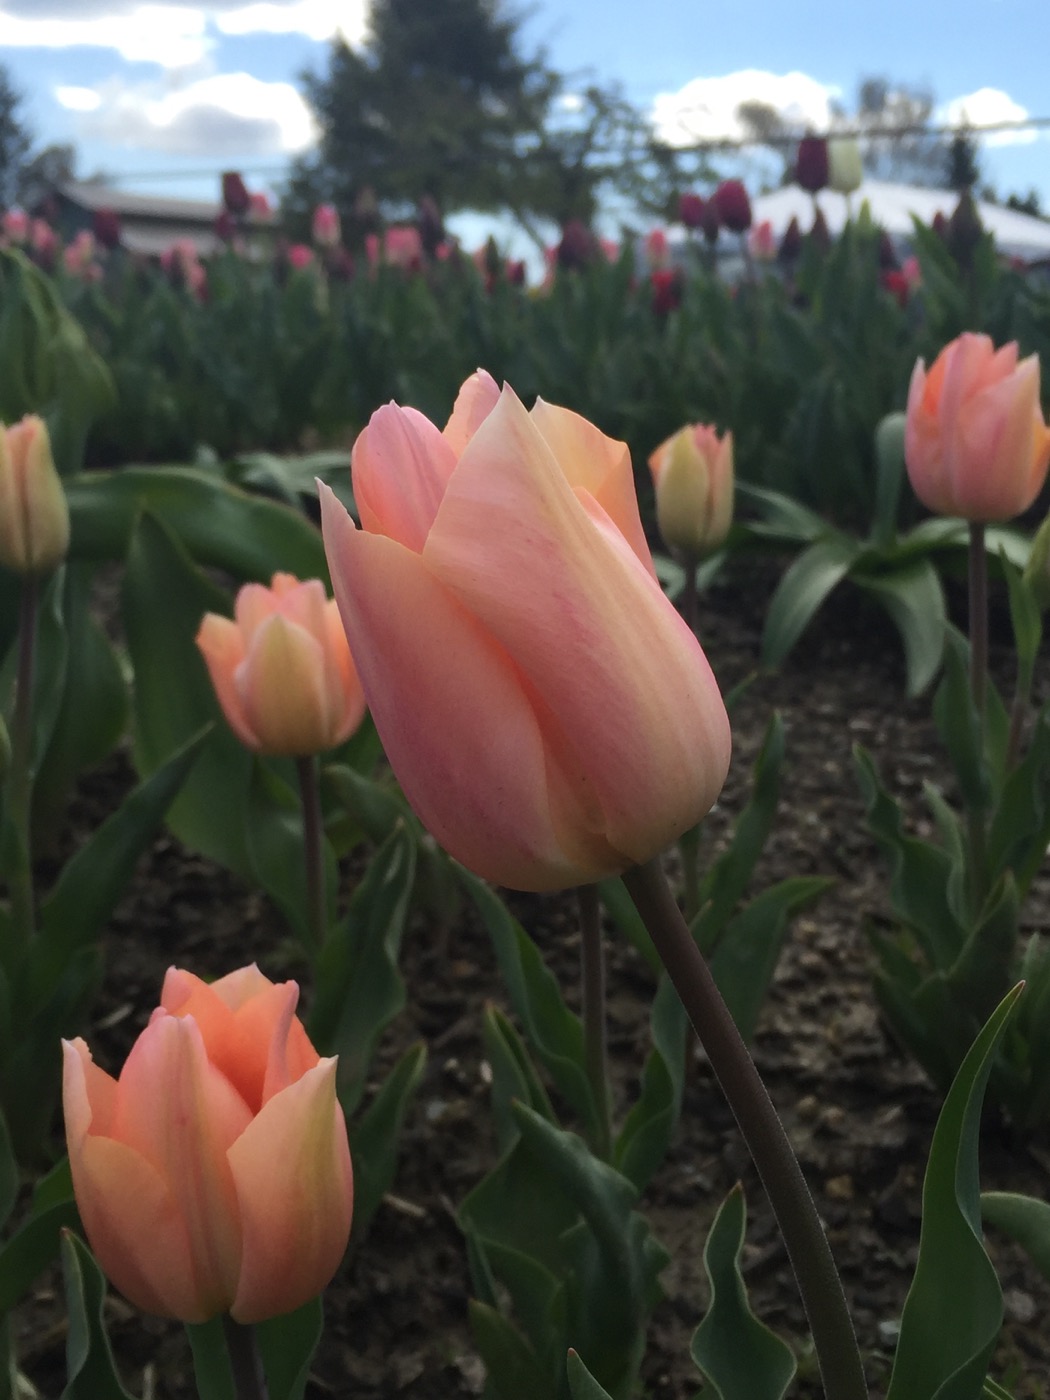 Skagit tulips